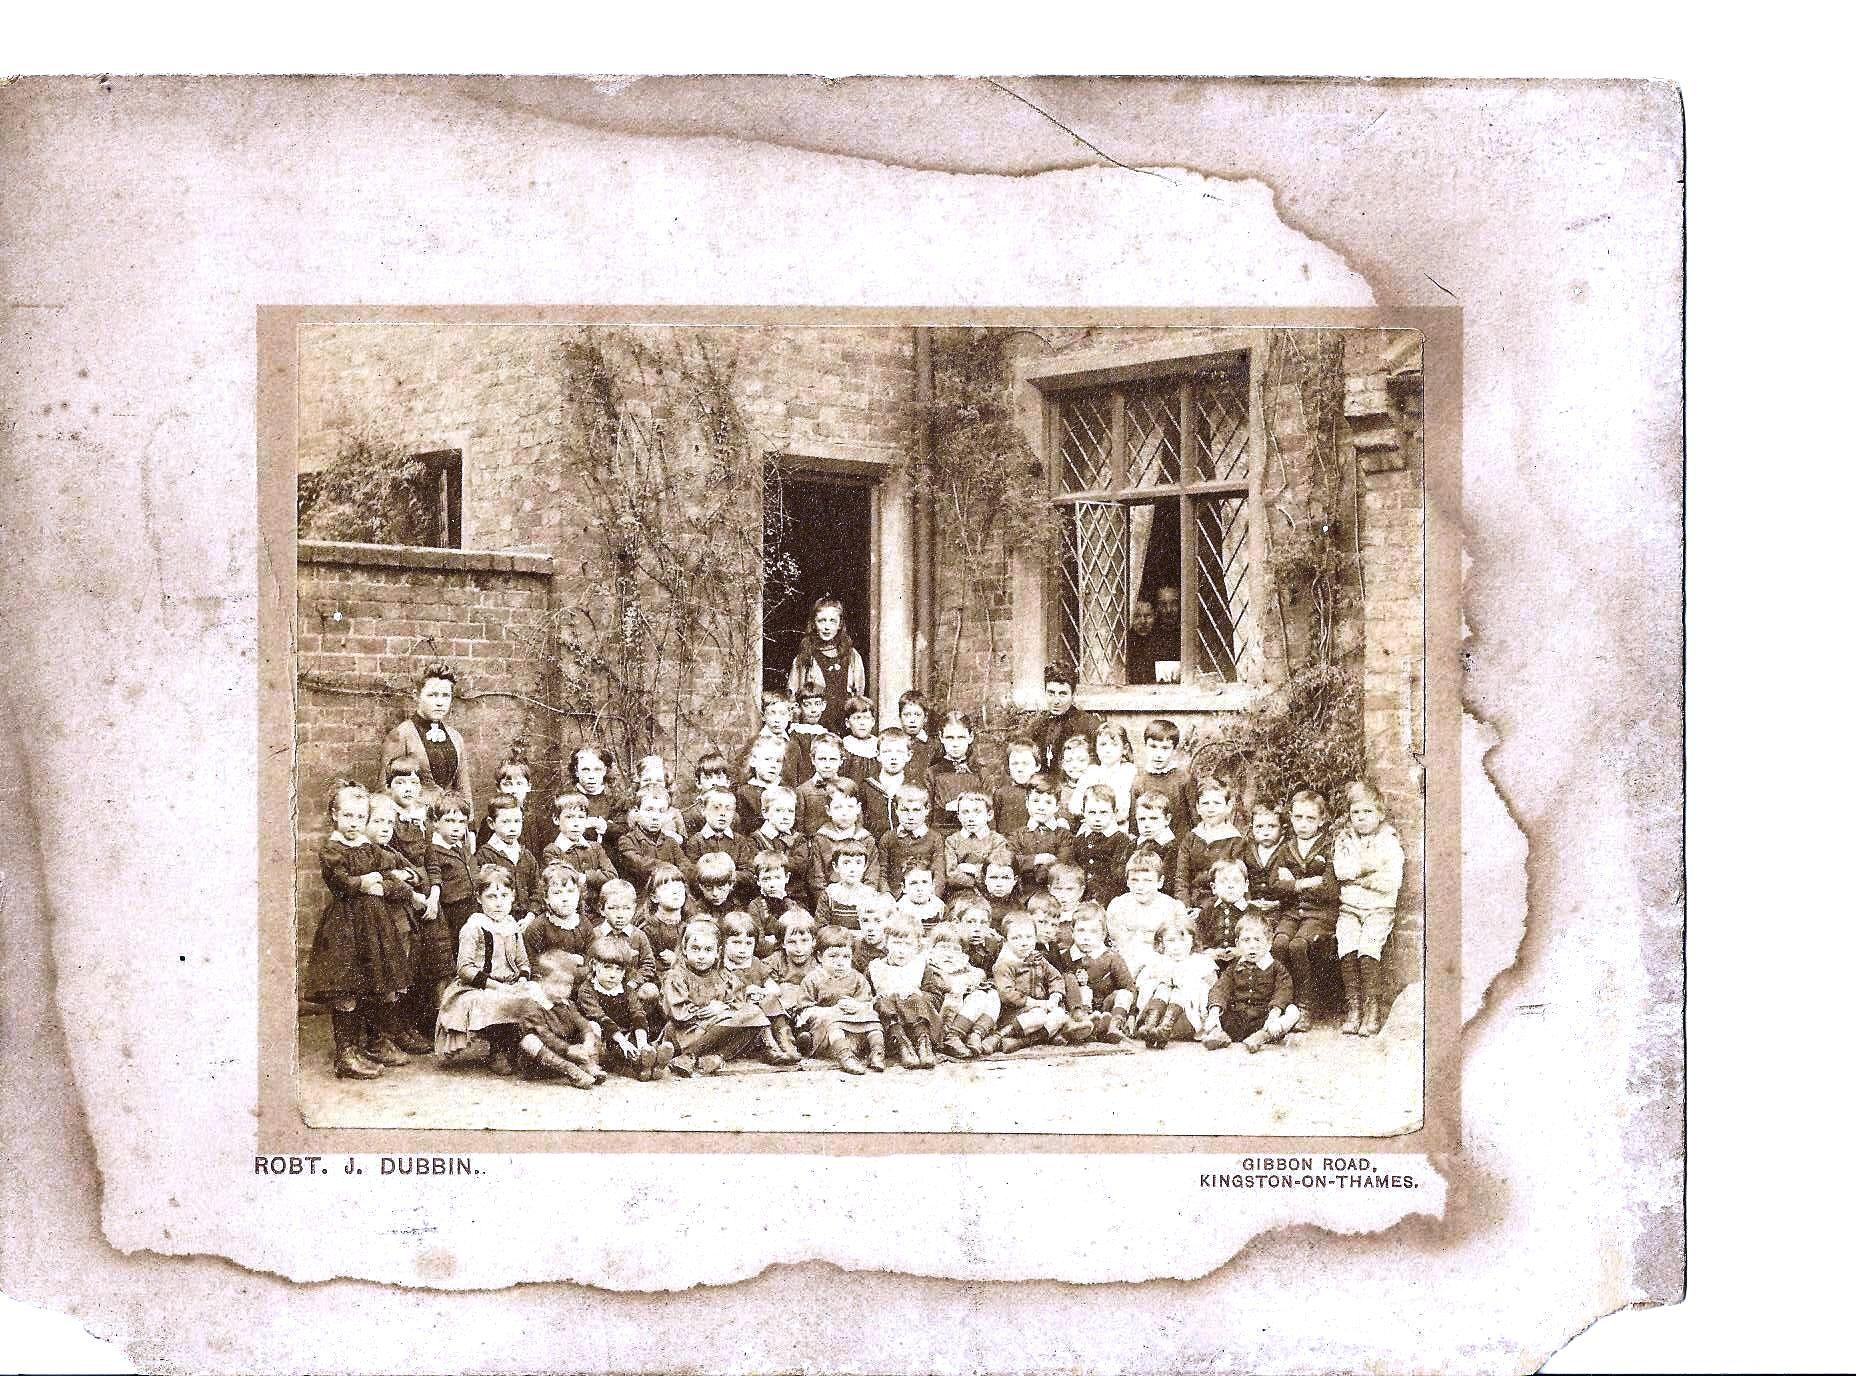 Old School photo of gropups of children in front of school c1900